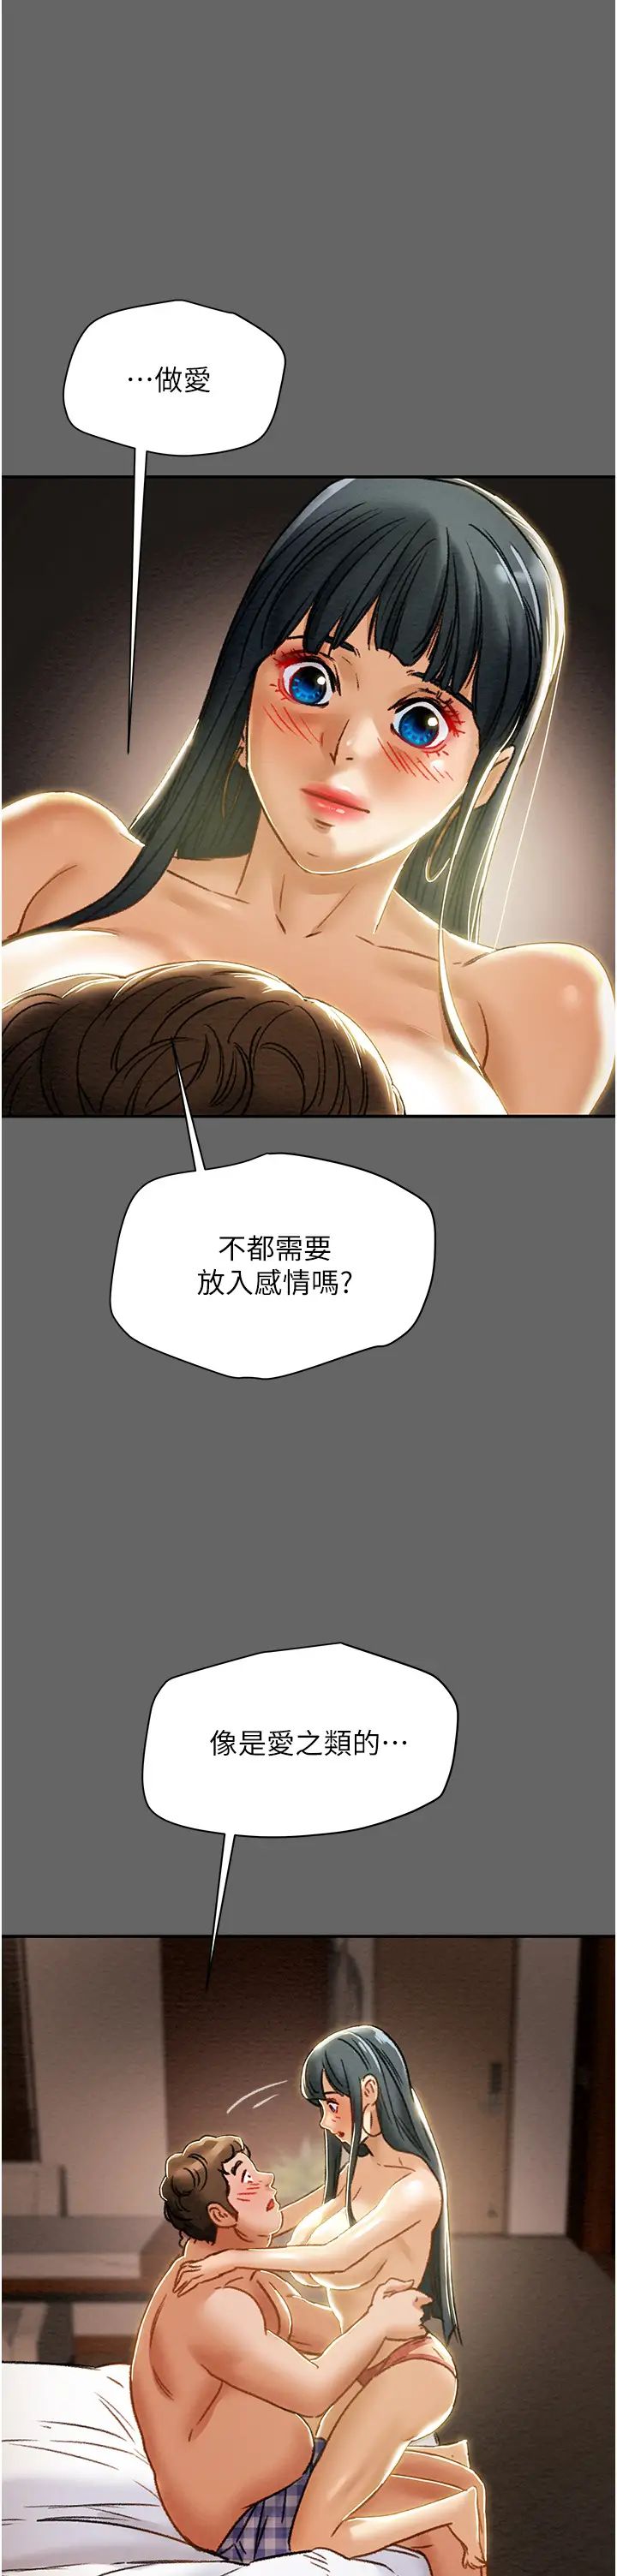 韩国污漫画 純情女攻略計劃 第55话一起享受，快感加倍 15